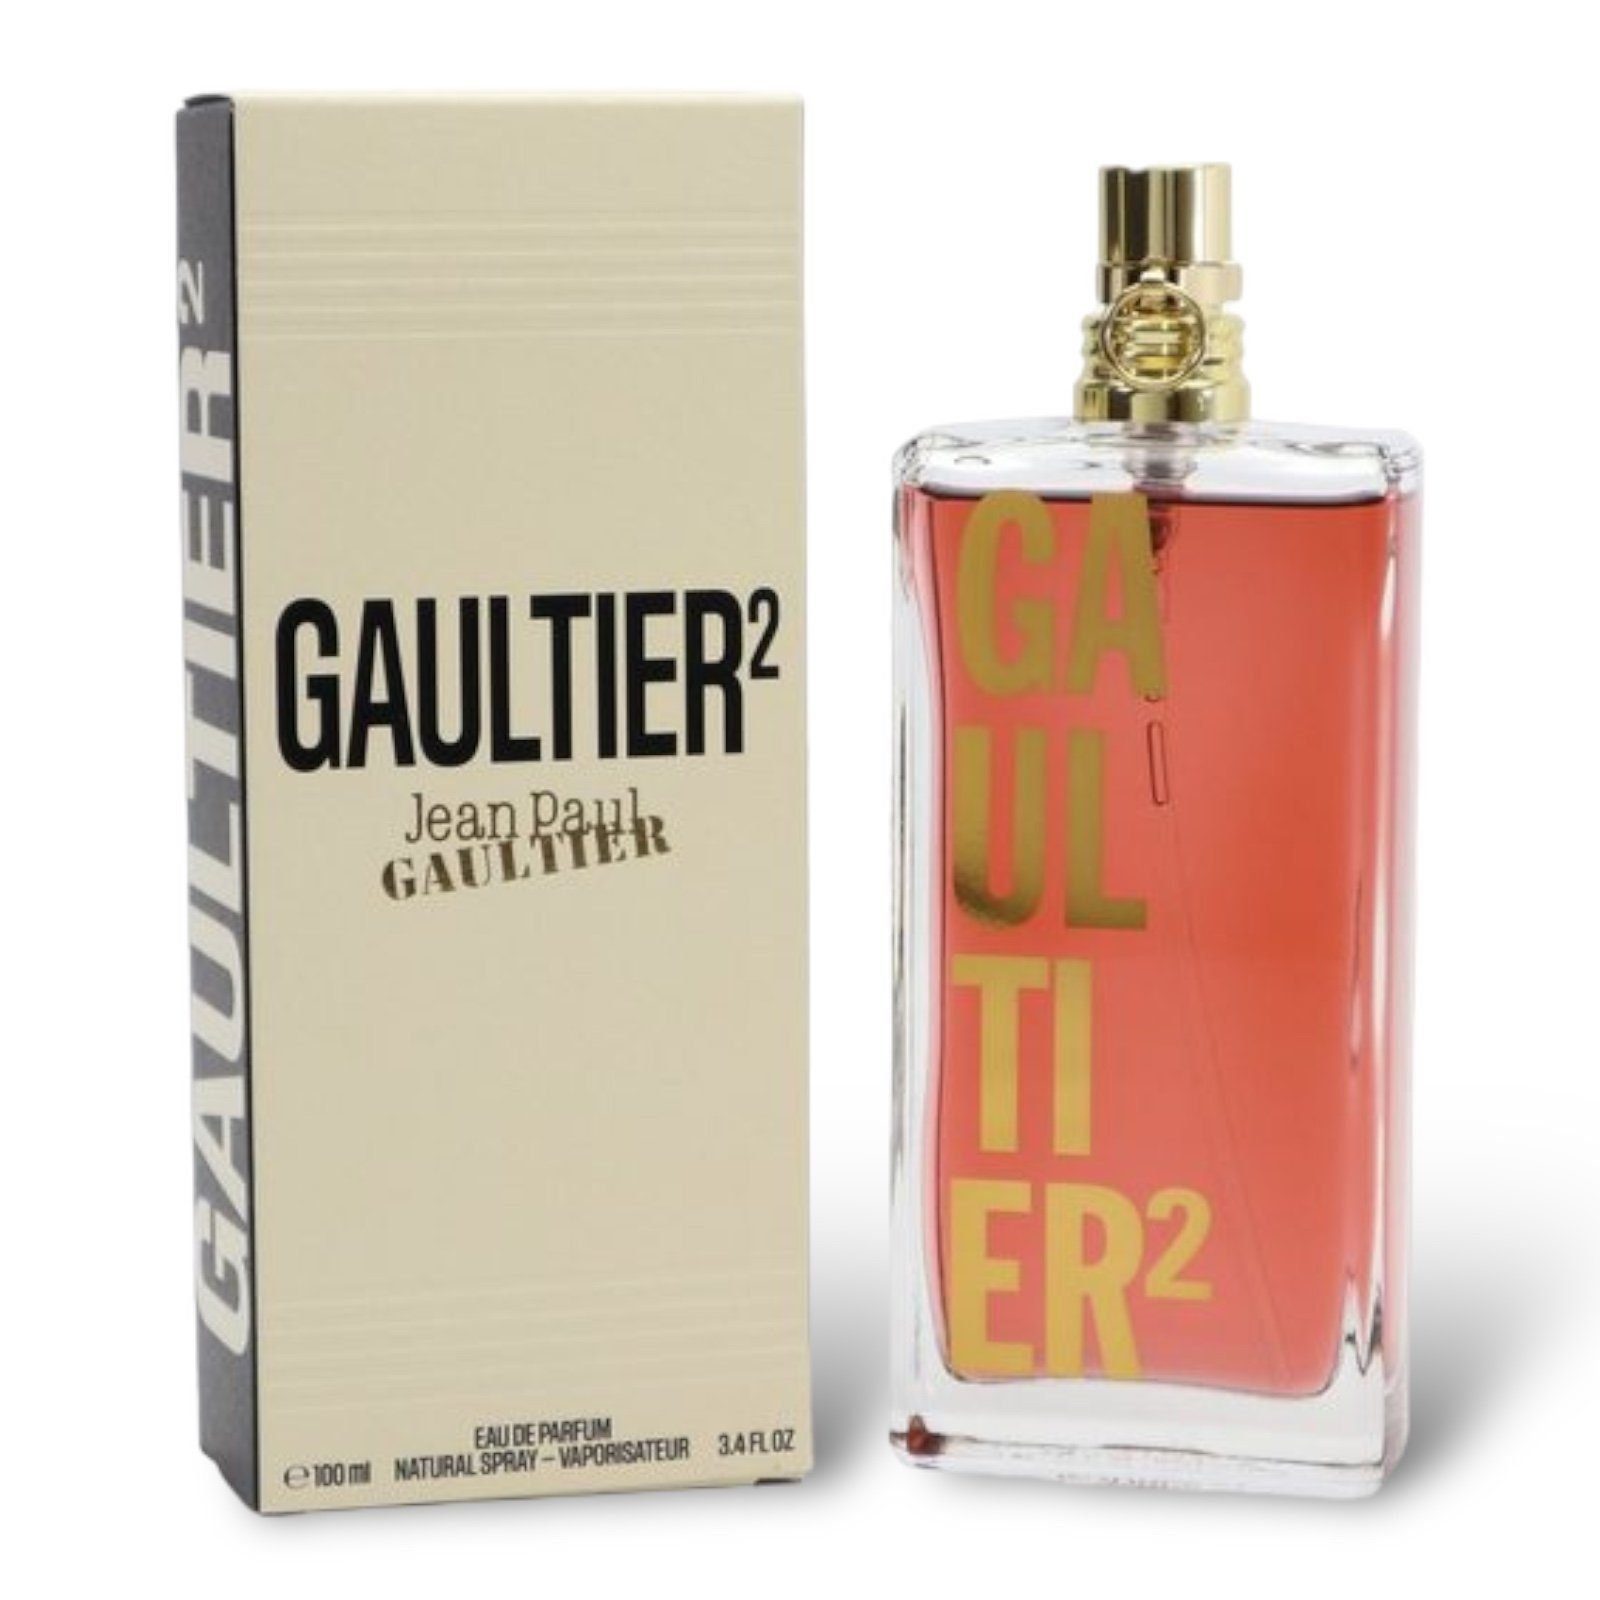 JEAN PAUL GAULTIER Eau de Parfum Jean Paul Gaultier 2, Süß